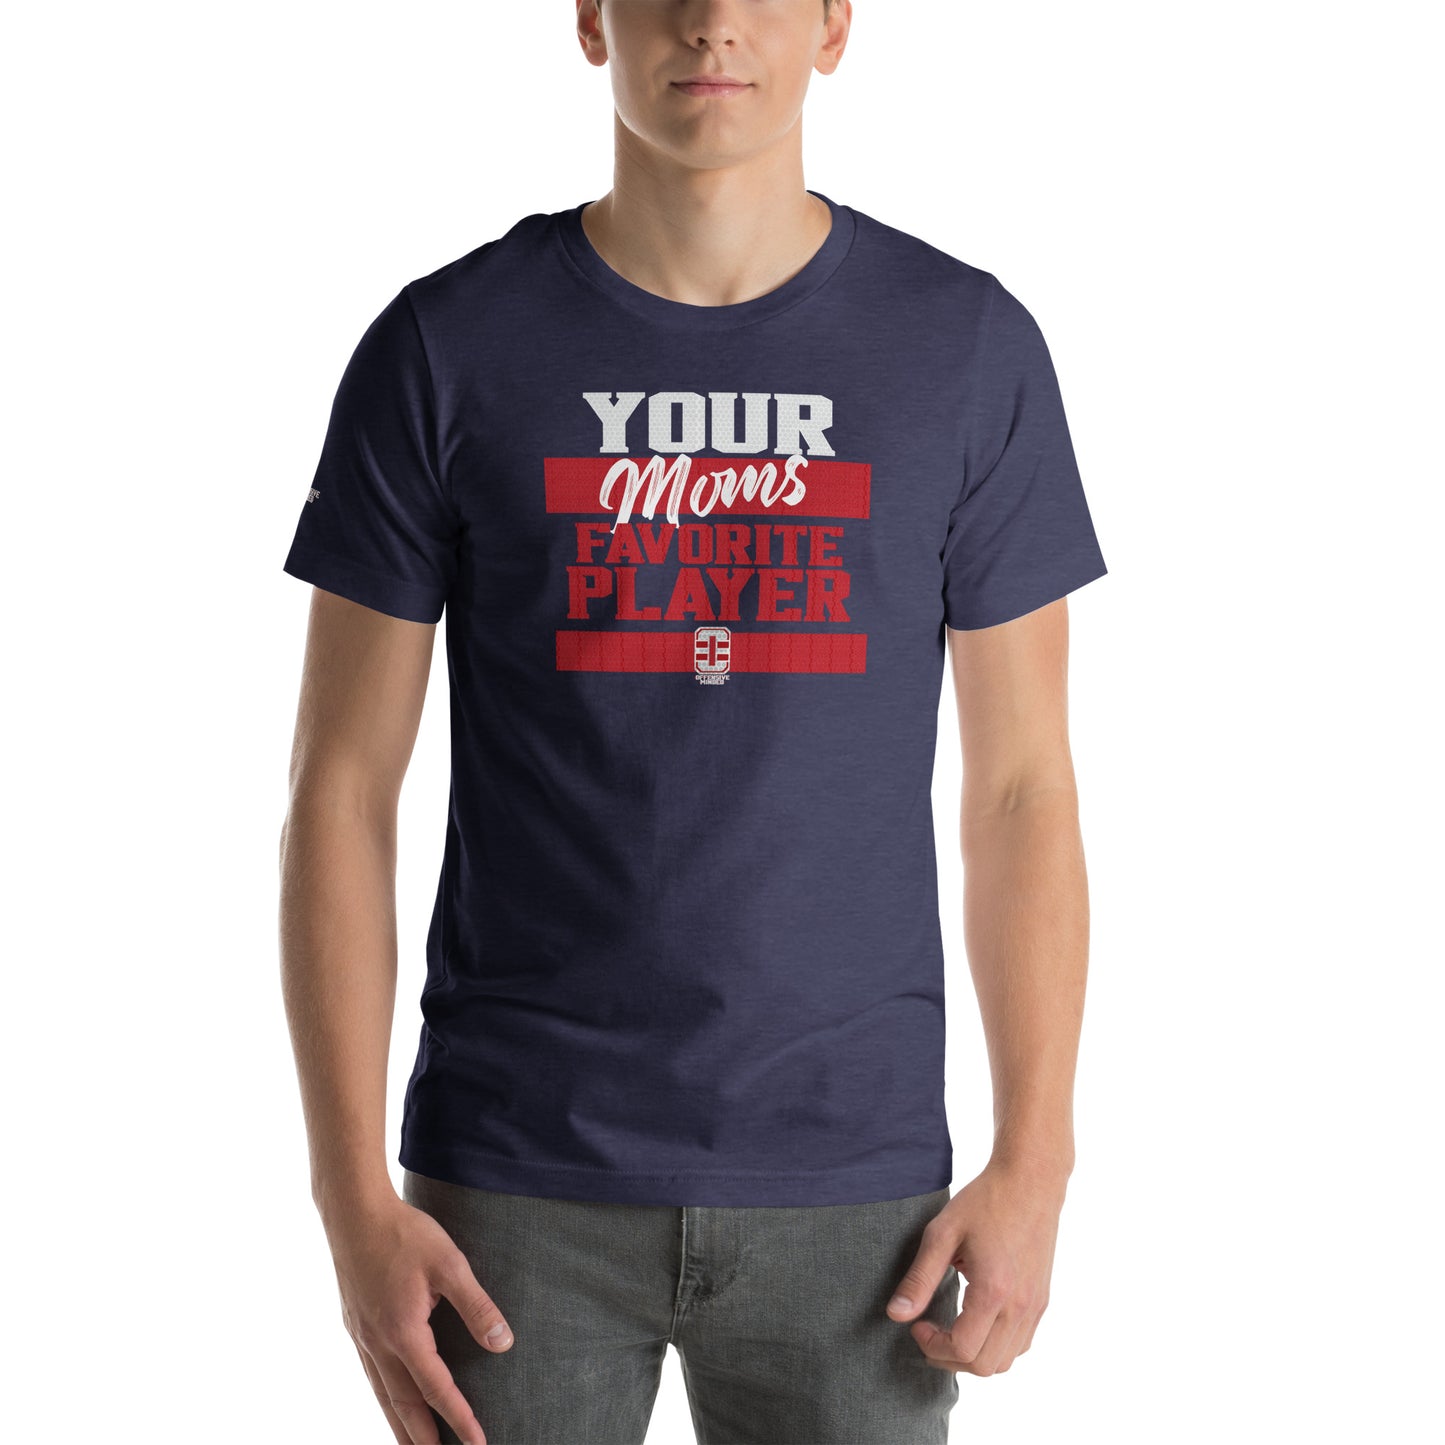 Your Moms Fav T-shirt